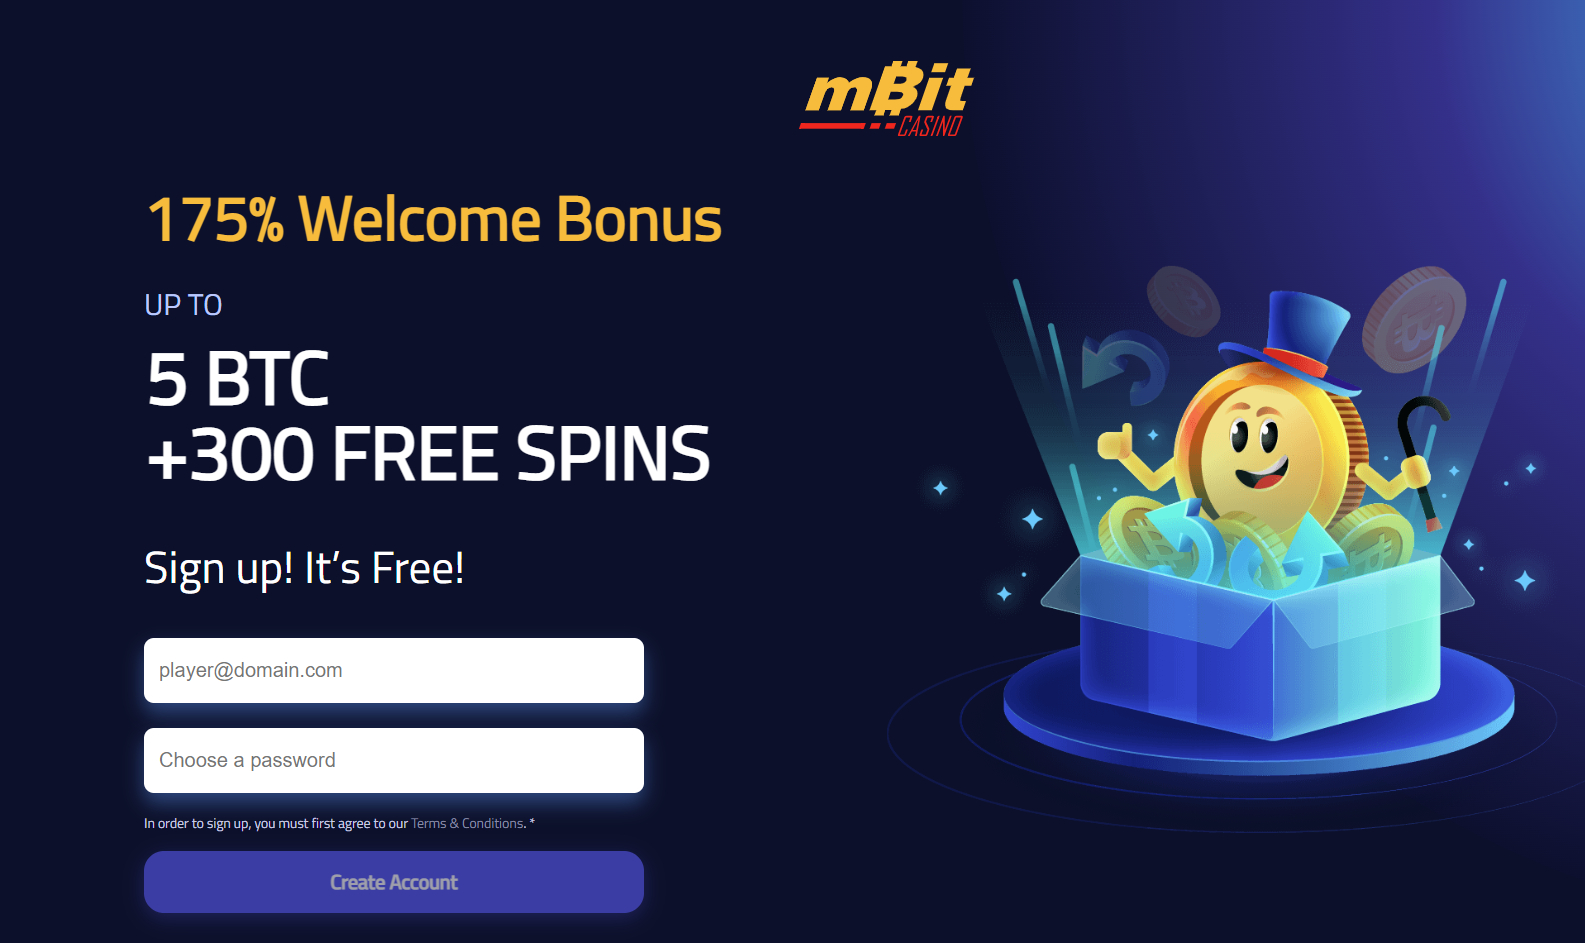 mBit crypto welcome bonus